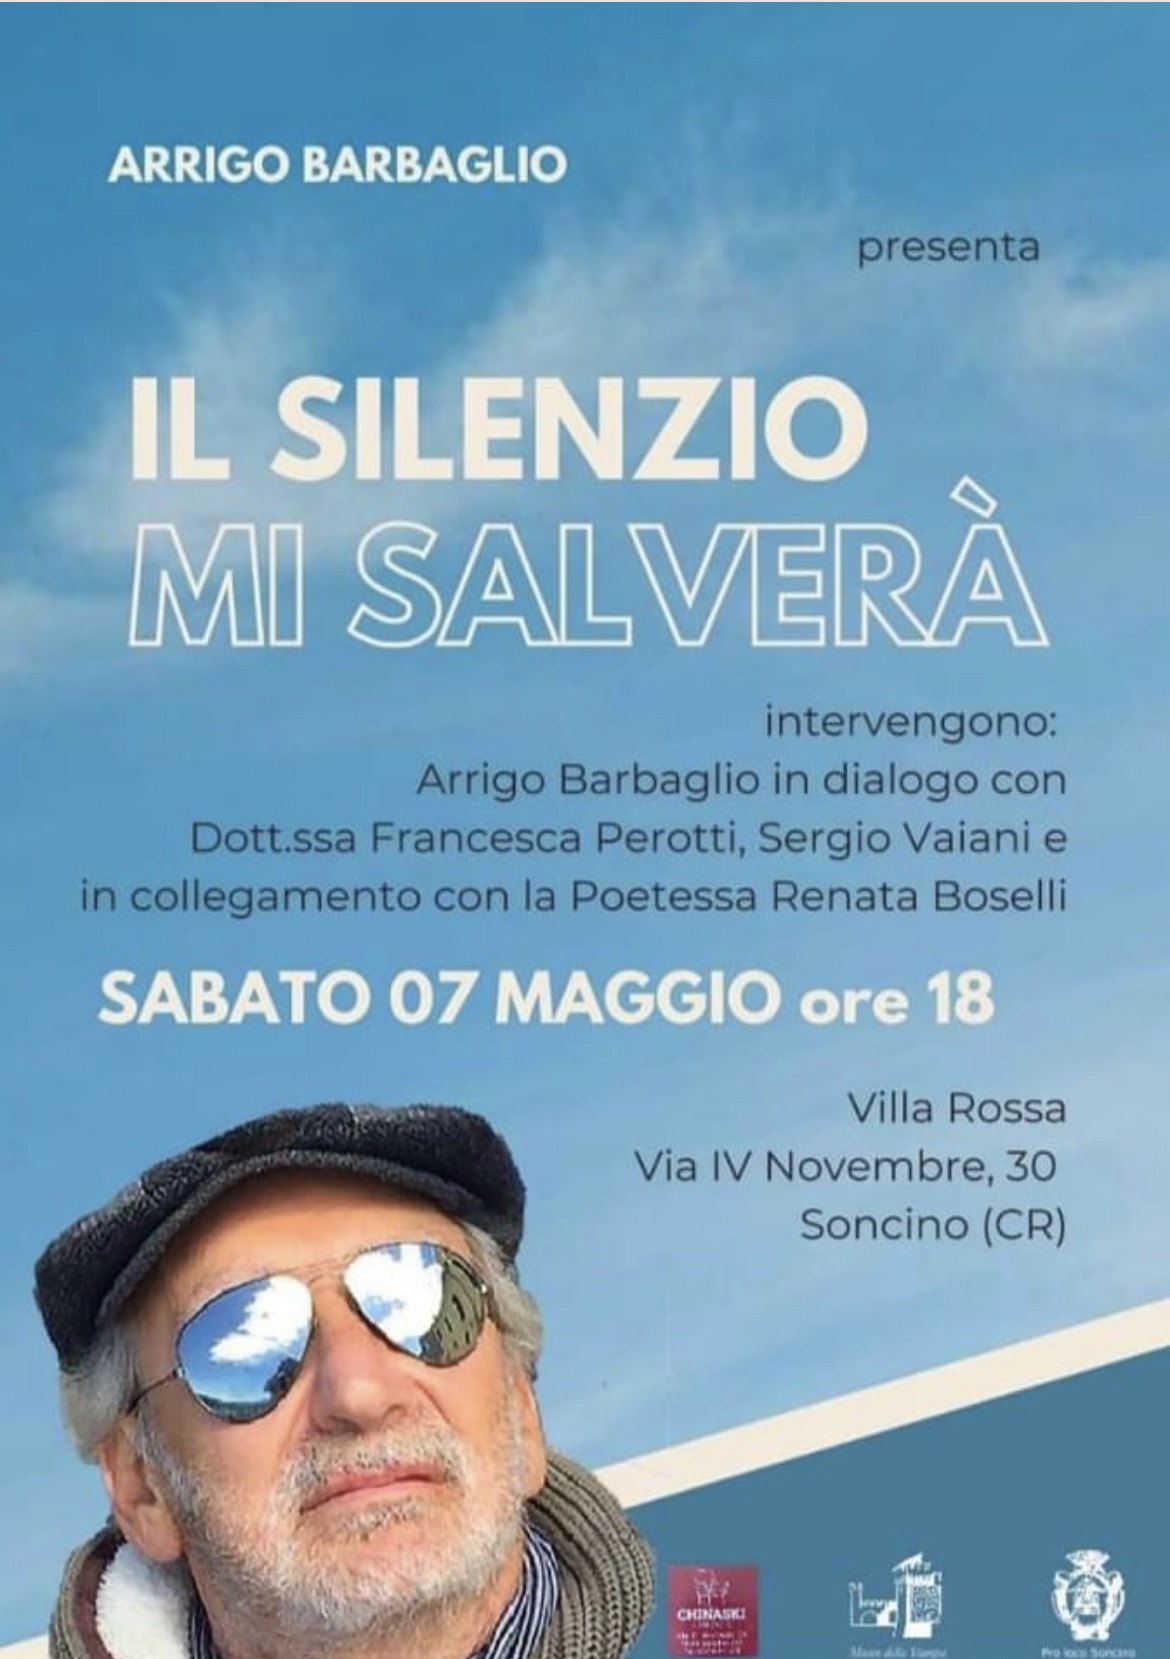 Arrigo Barbaglio, FotoScrittore sempre in fase creativa, sabato a Soncino presenterà il suo libro “Il silenzio mi salverà”